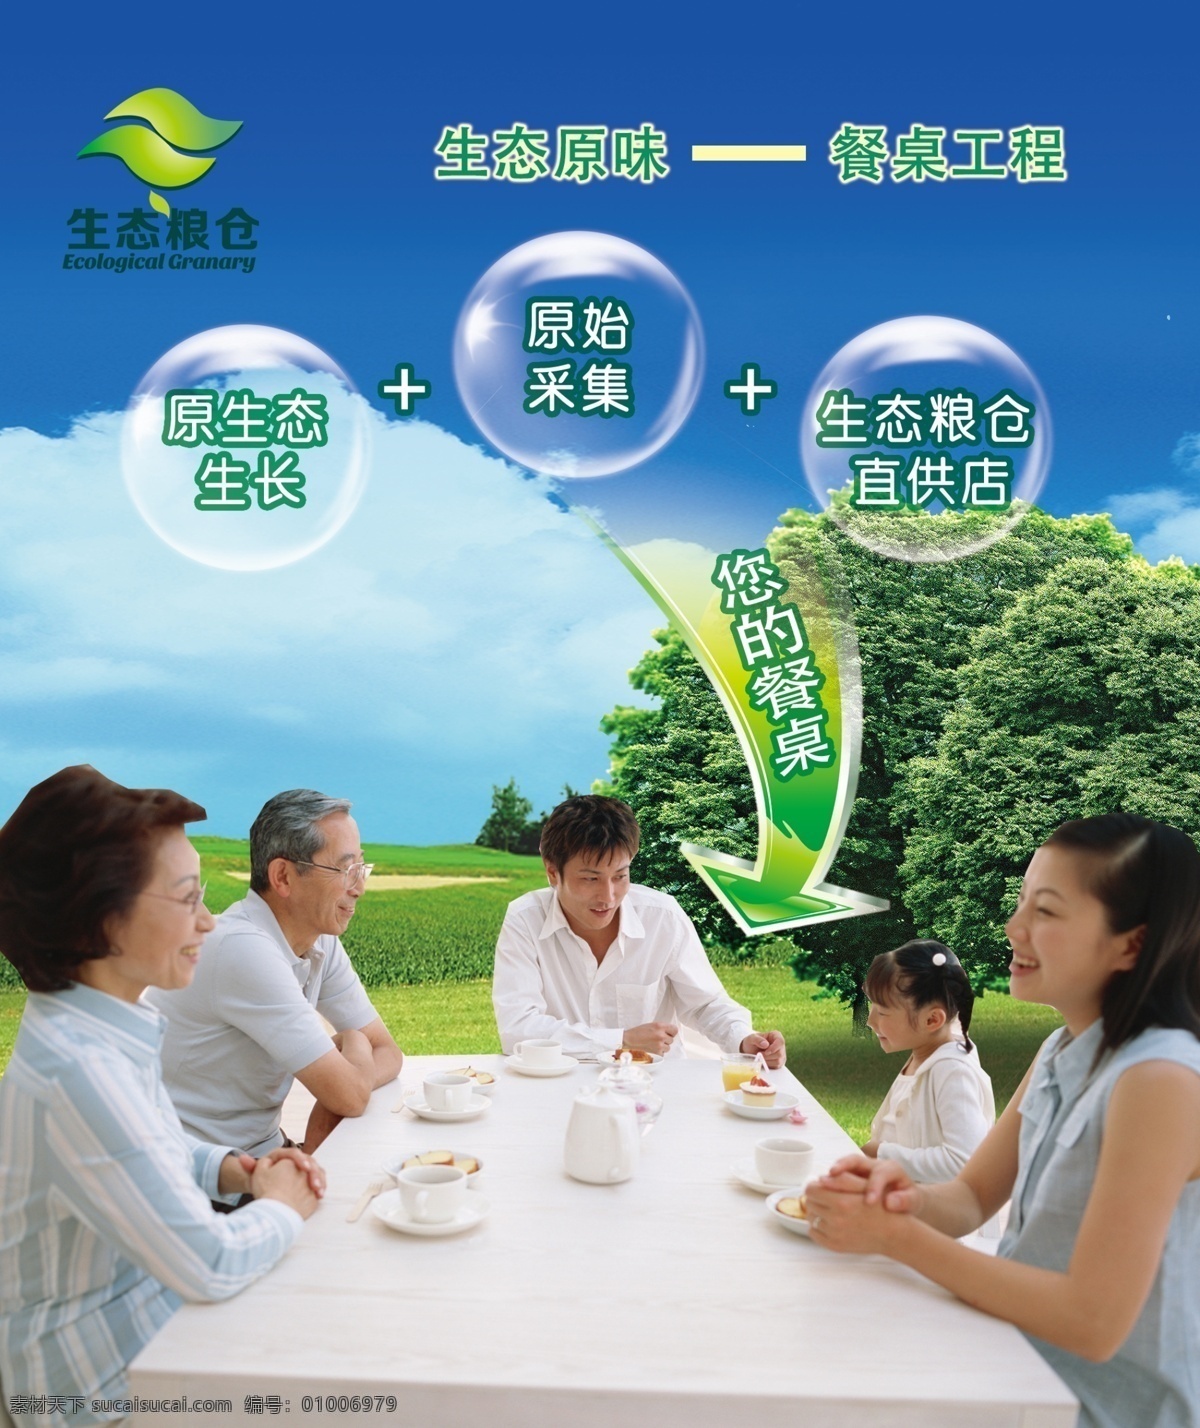 绿色早餐海报 绿色 食品 粮仓 大树 家人 餐桌 蓝色